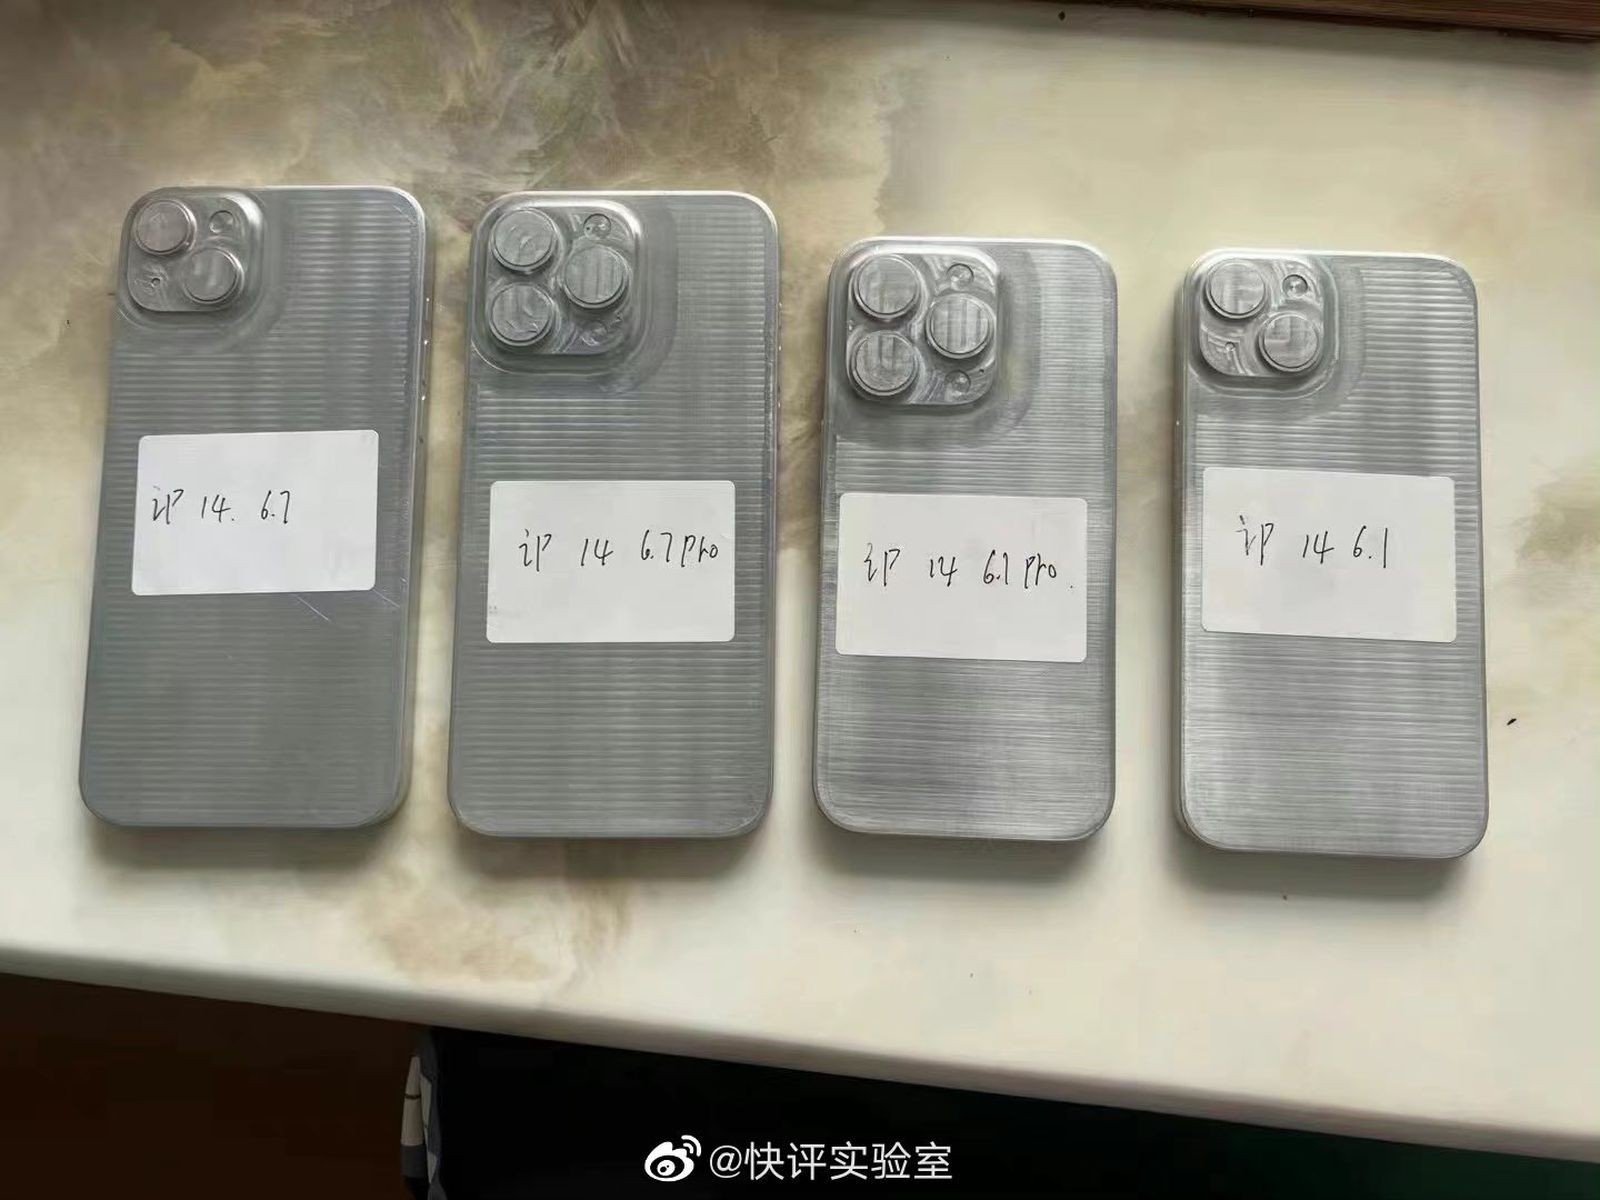 Как будет выглядеть iPhone 14 макеты смартфона слили в Сеть